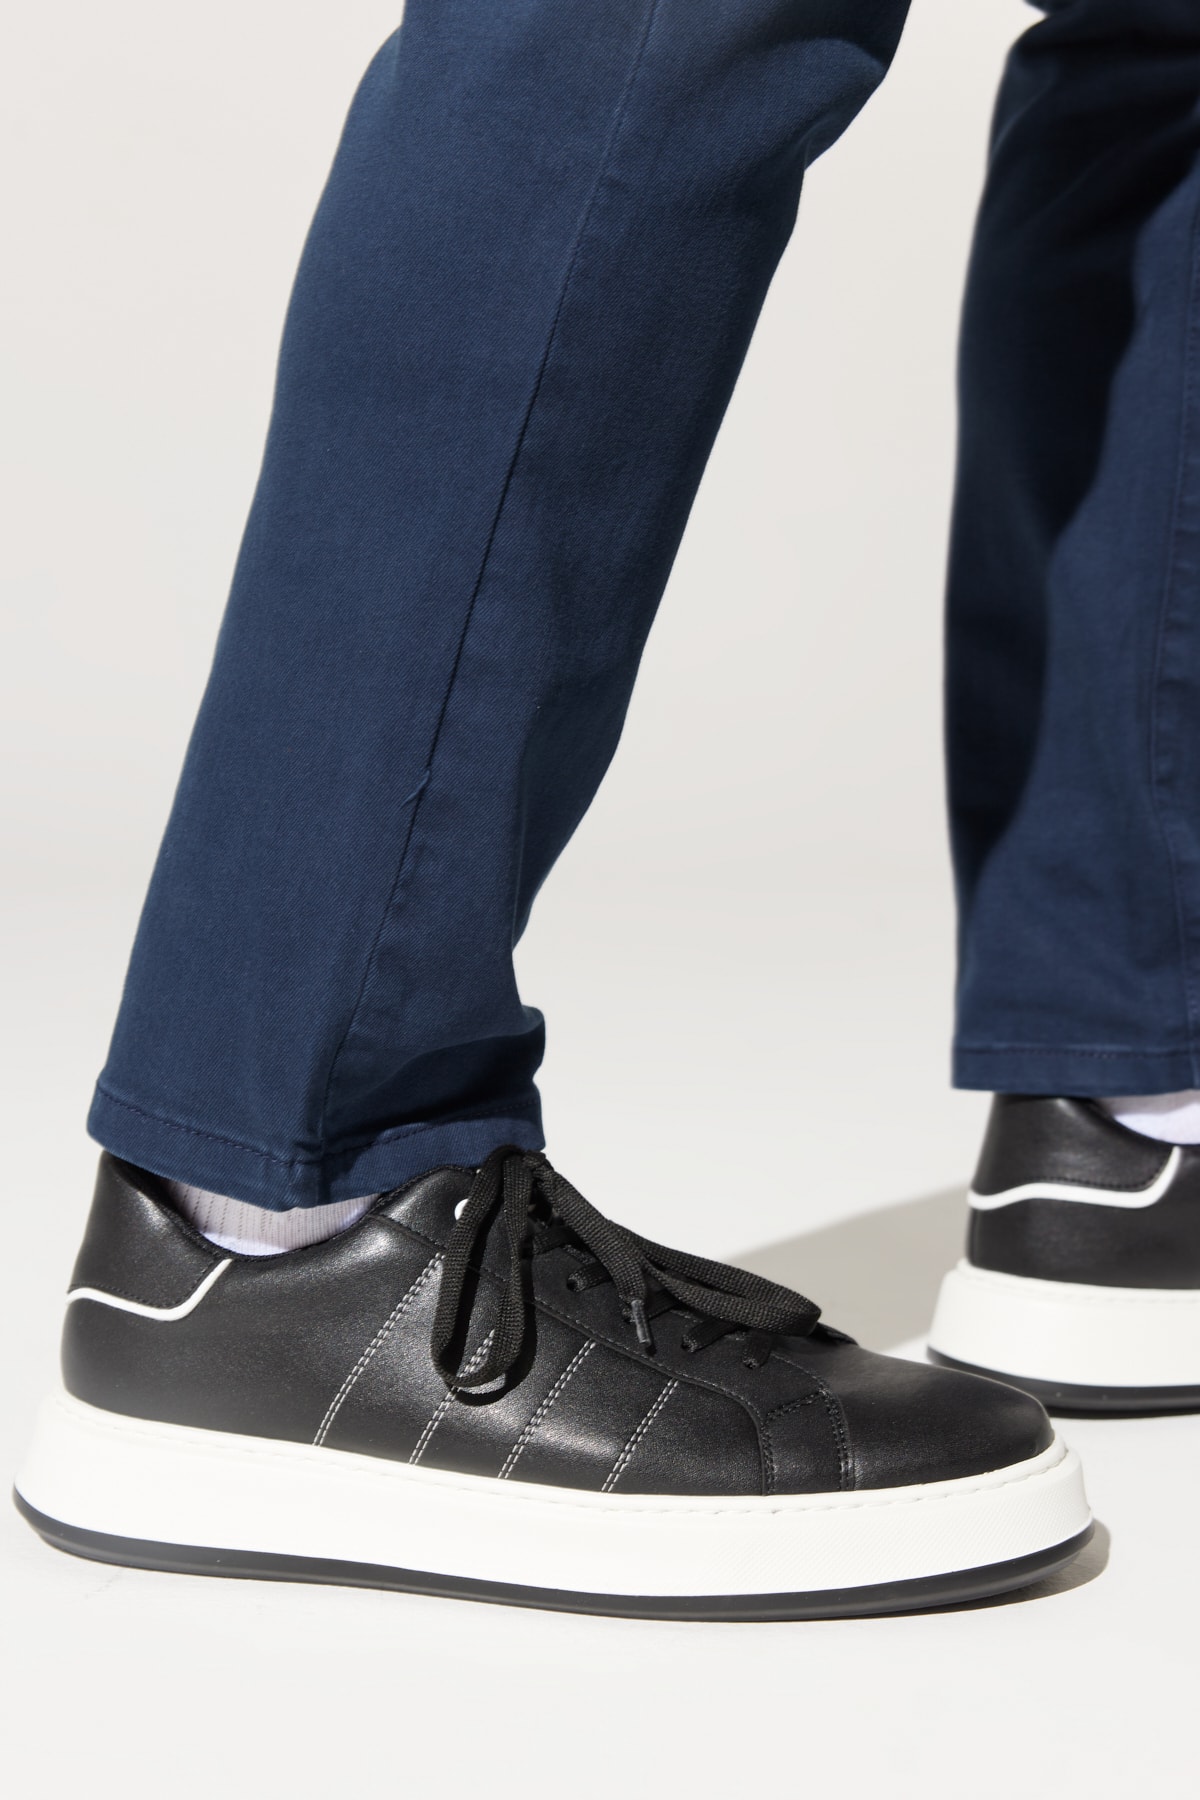 Levně ALTINYILDIZ CLASSICS Men's Black and white Comfortable Sole Sports Sneaker Shoes.